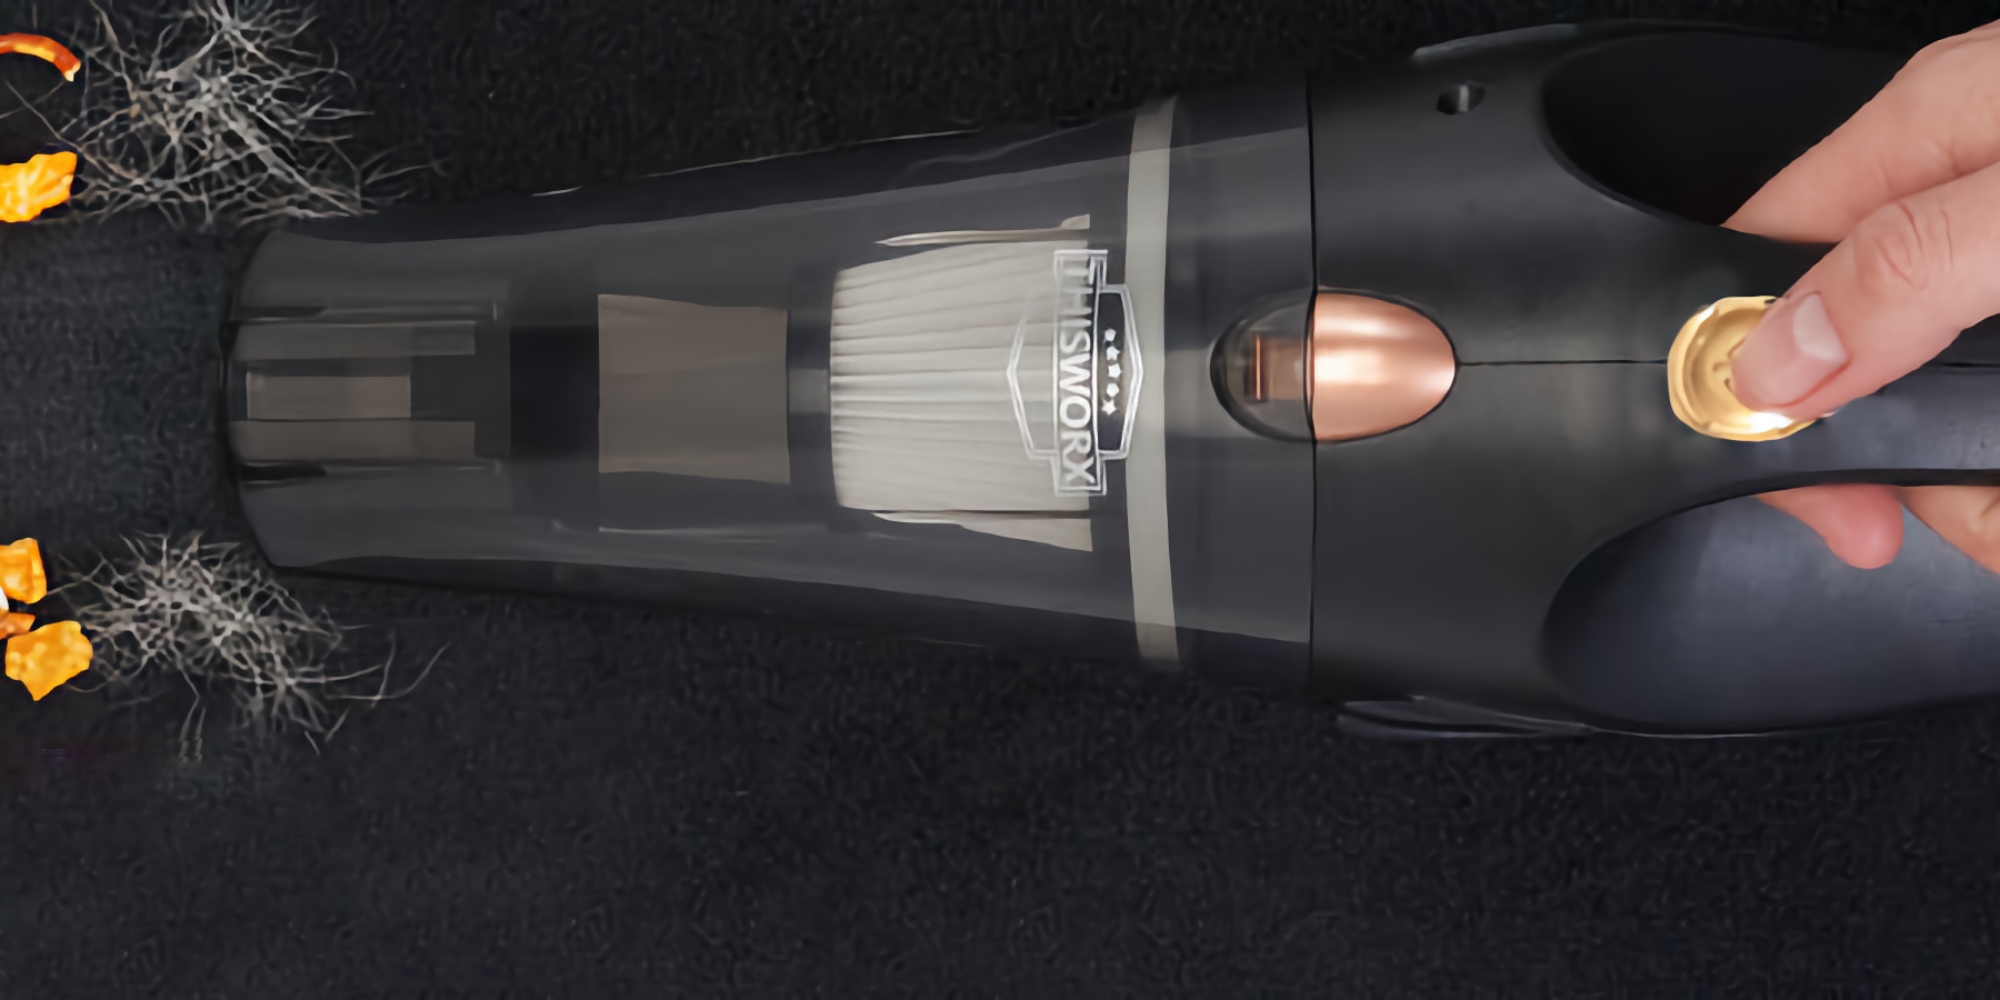 1 Best Selling Car Vacuum!?, THISWORX Car Vacuum Cleaner